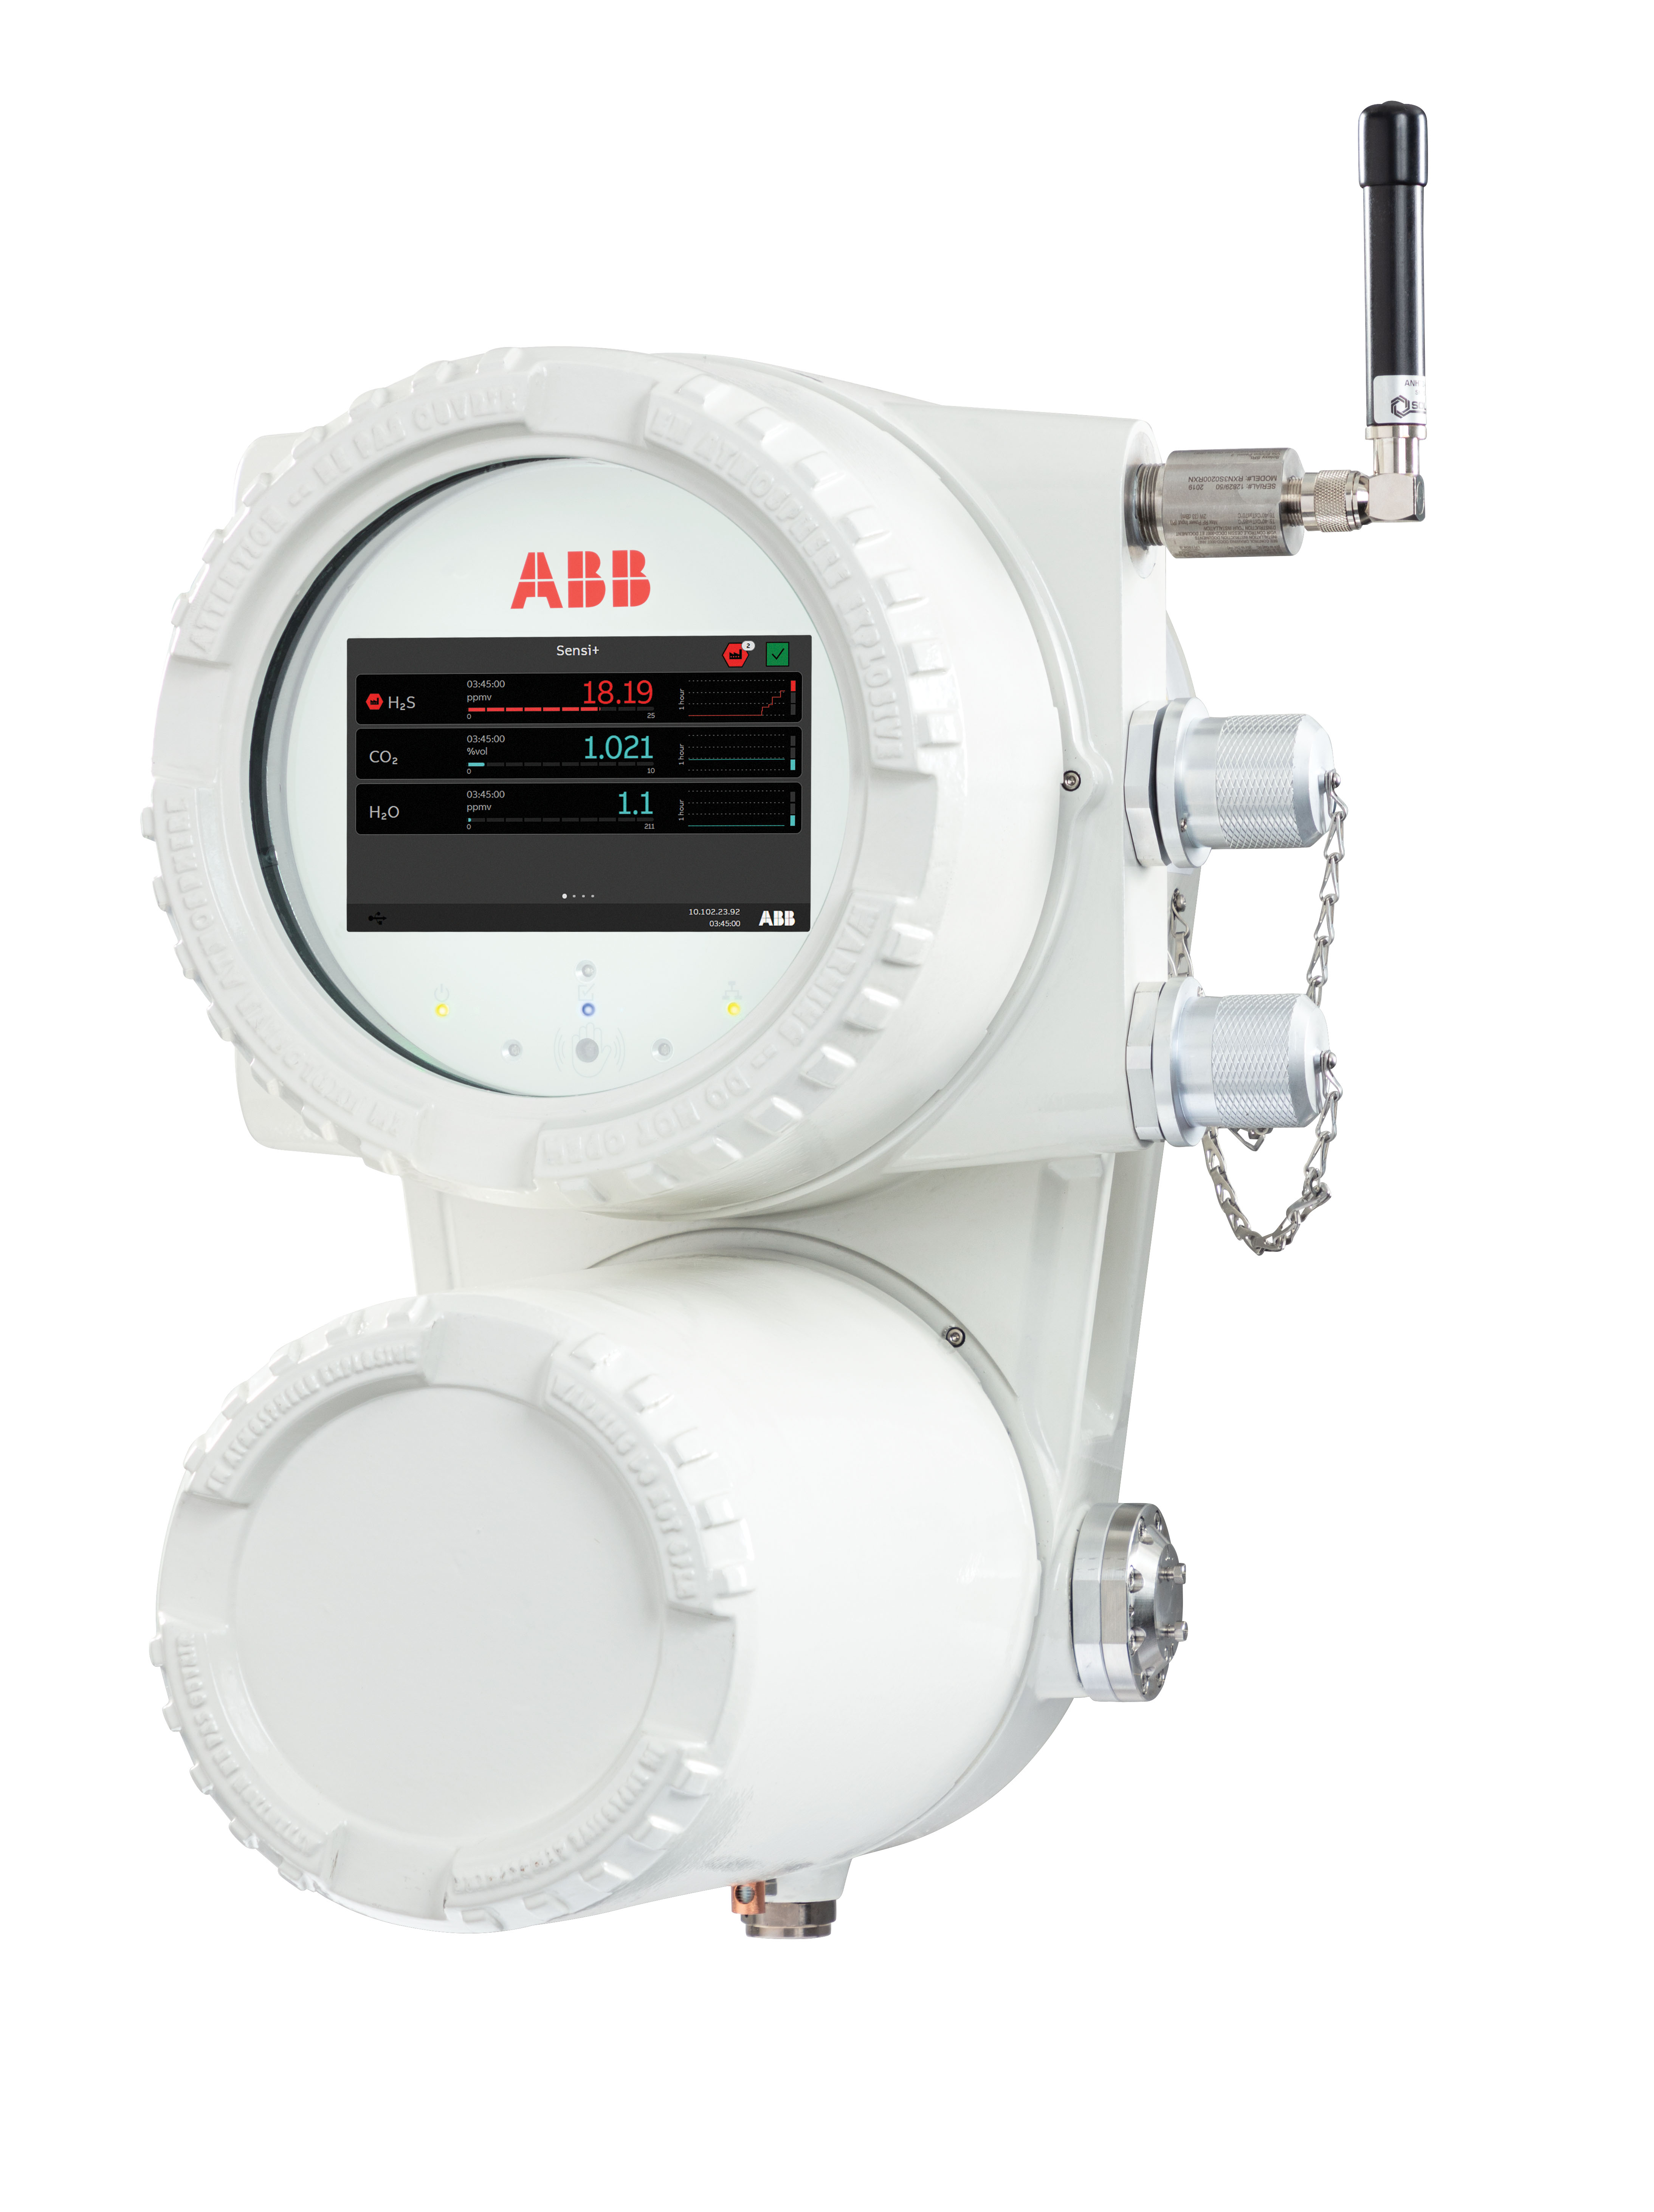 ABB Sensi+ designed for natural gas contaminants monitoring